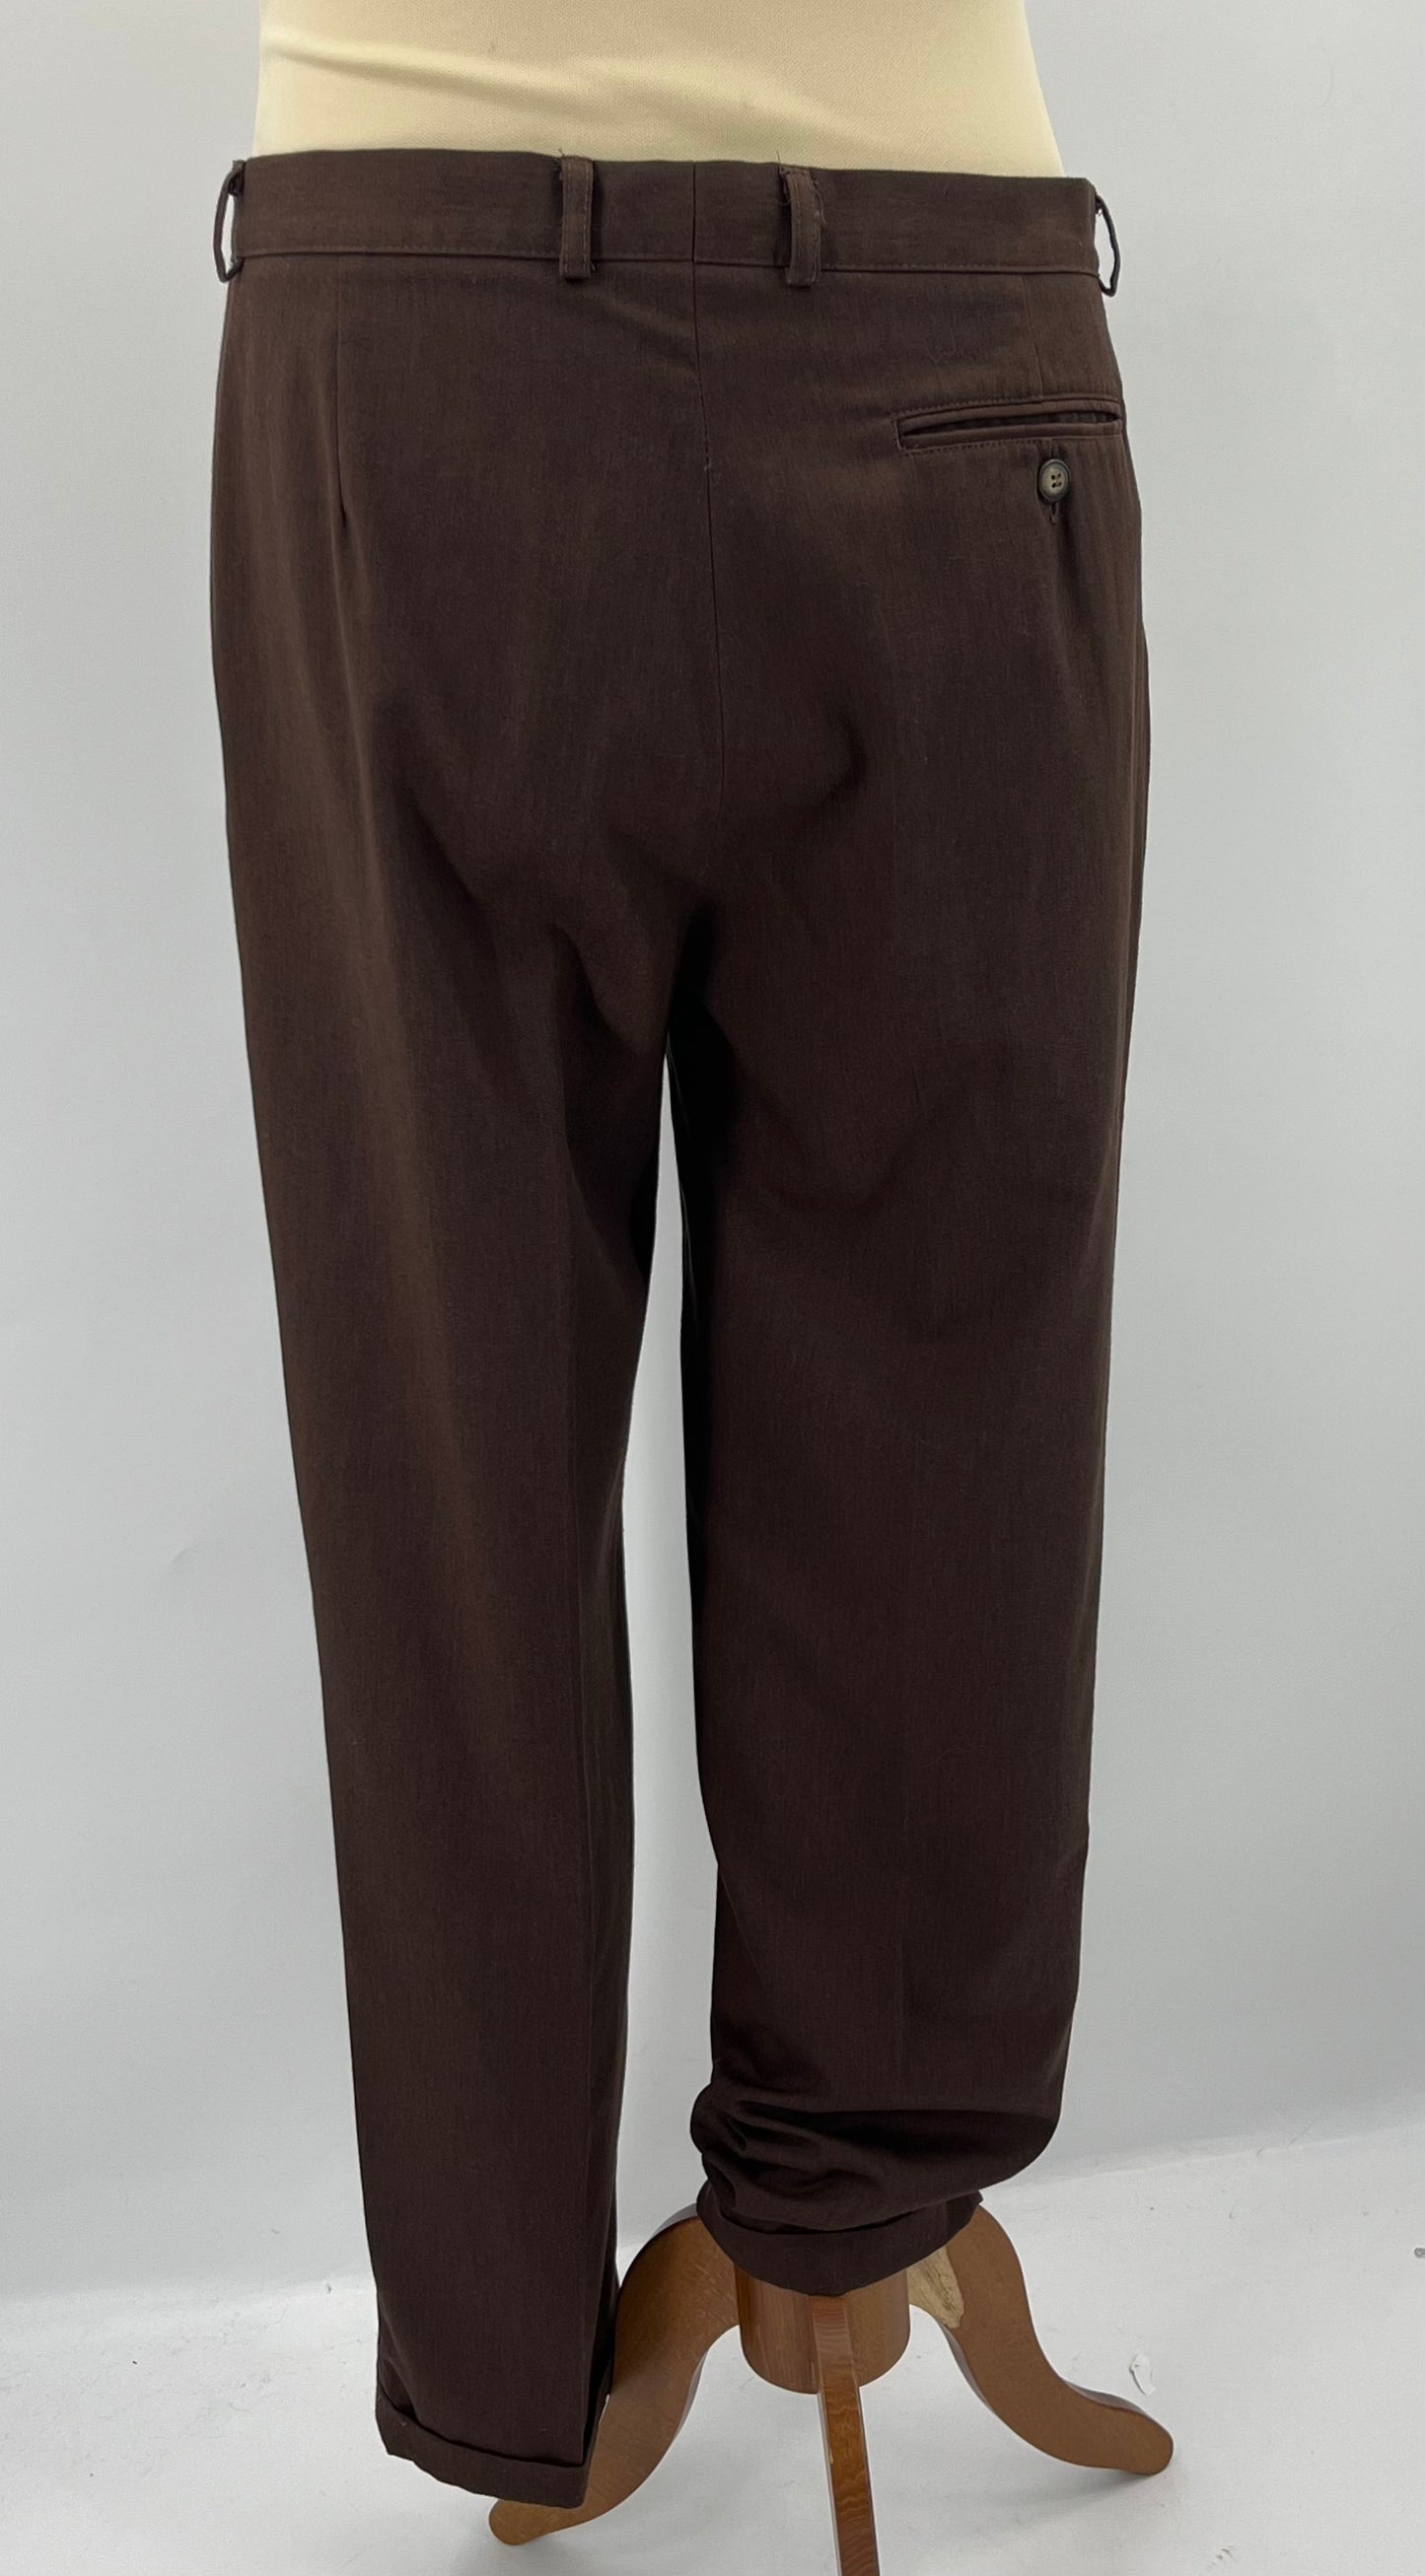 Luhta, ruskeat miesten housut, 90-luku, vyöt.ymp. 86cm